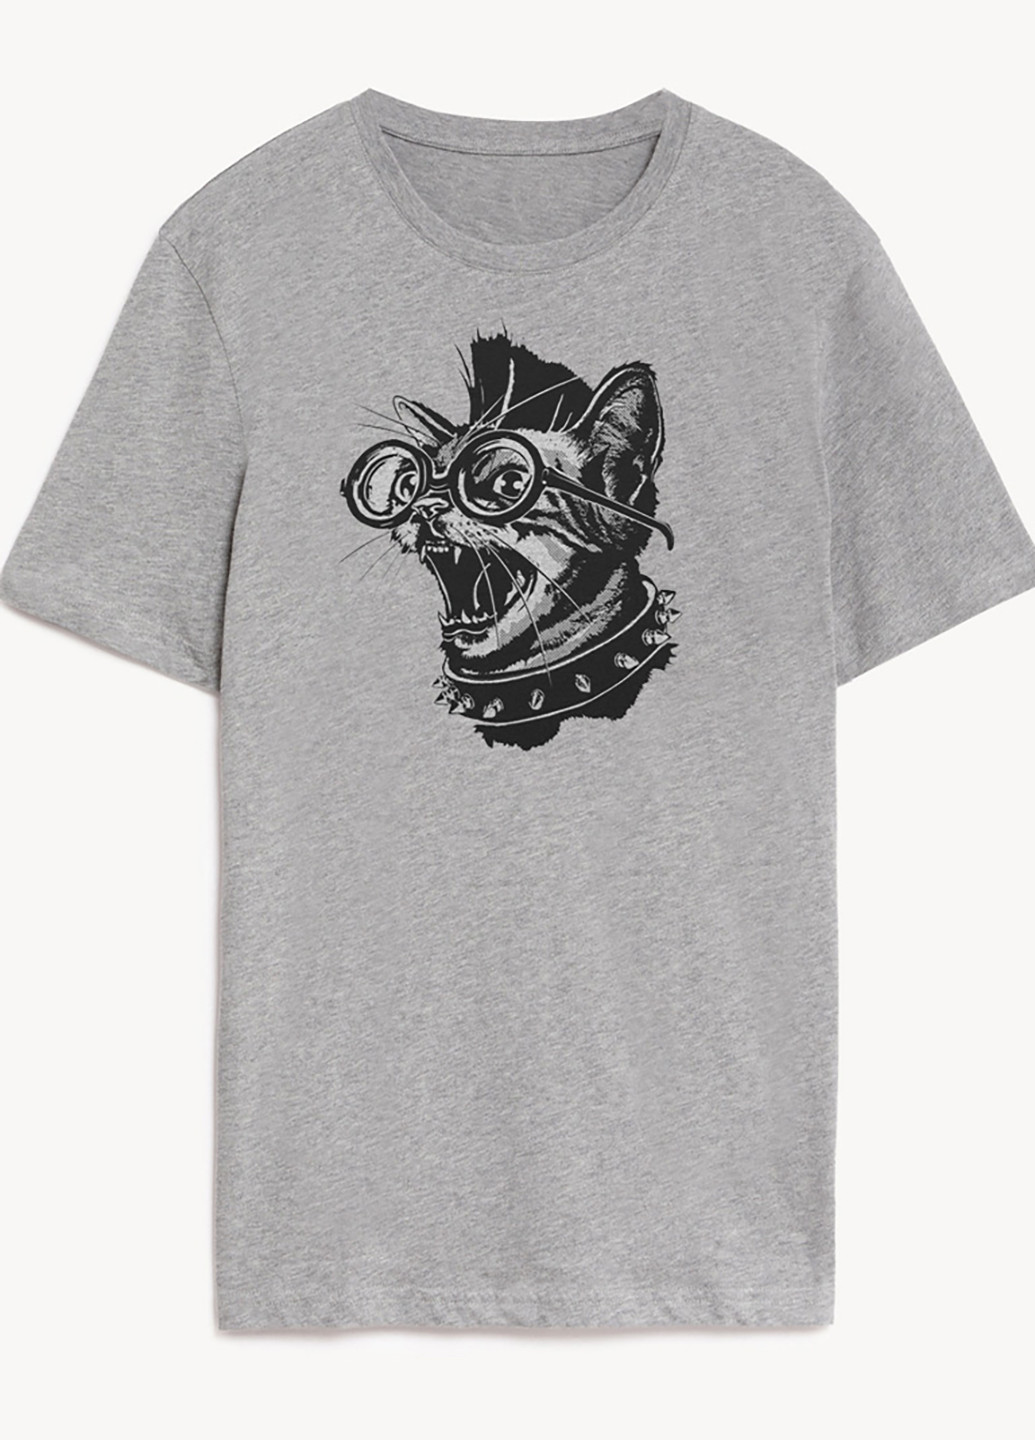 Серая футболка мужская серая punk cat Zuzu